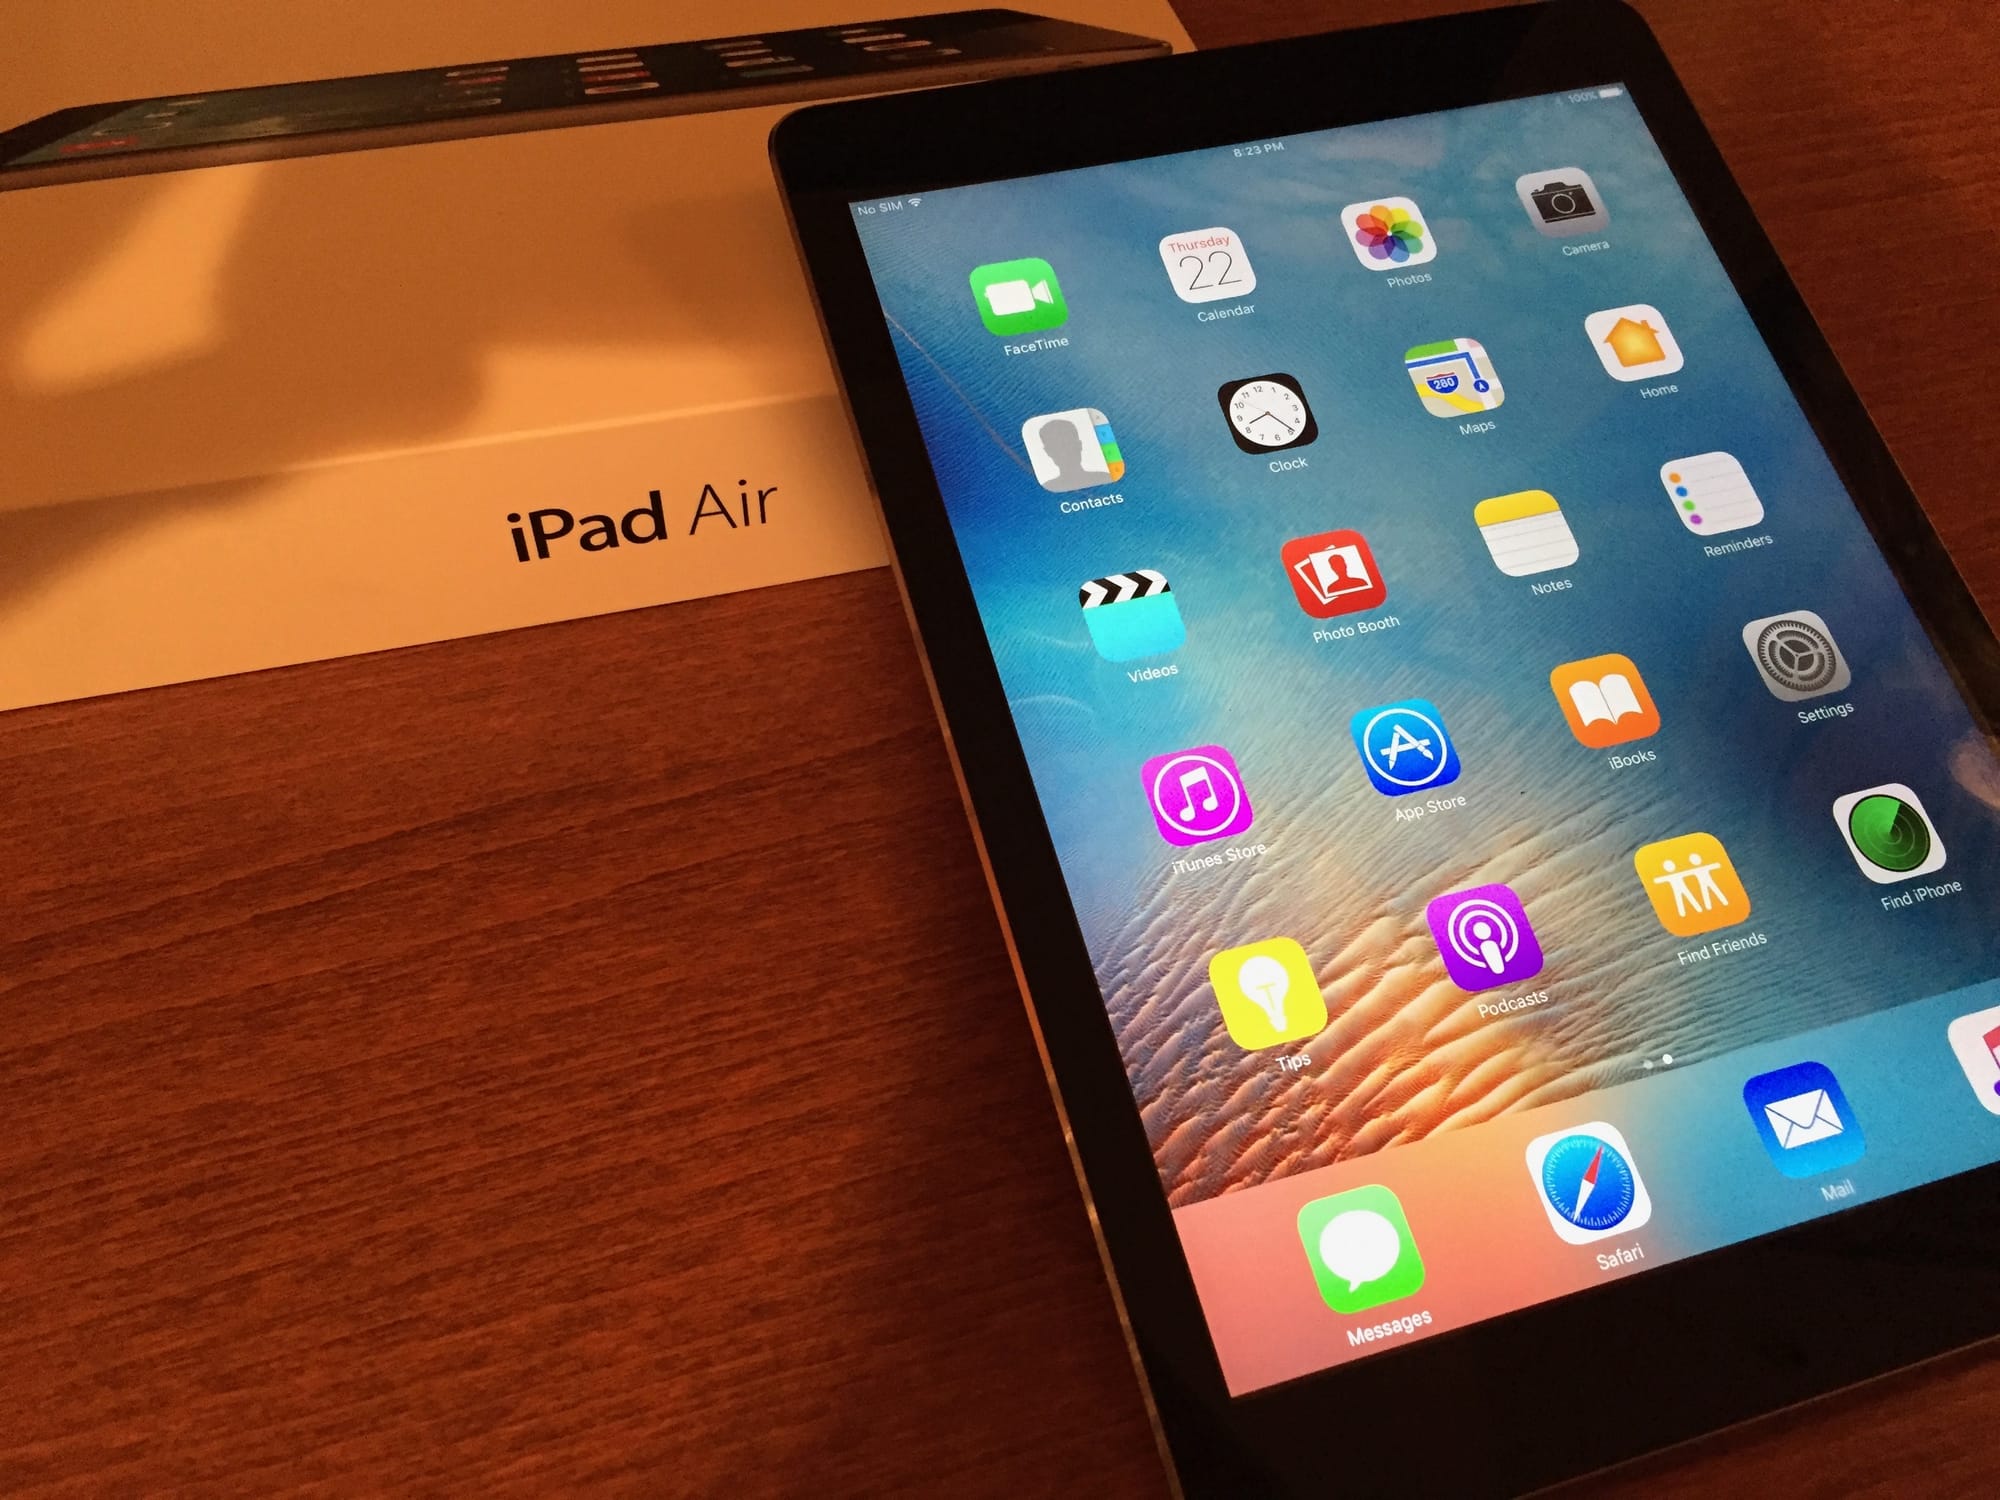 A new era of iPad design, the iPad Air